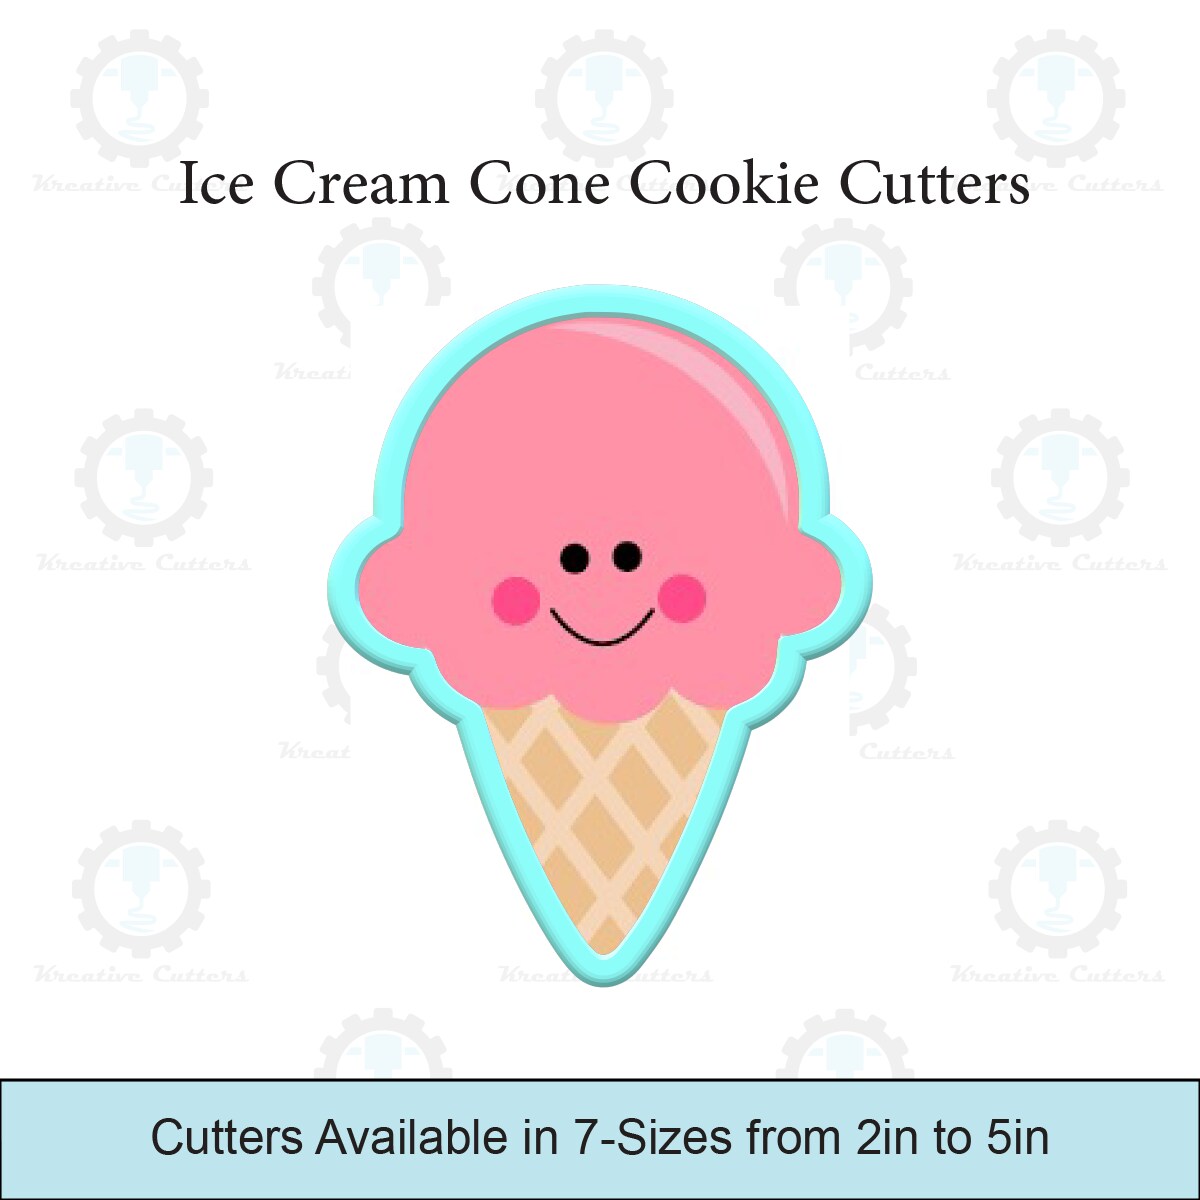 Ice Cream Cone Cookie Cutter